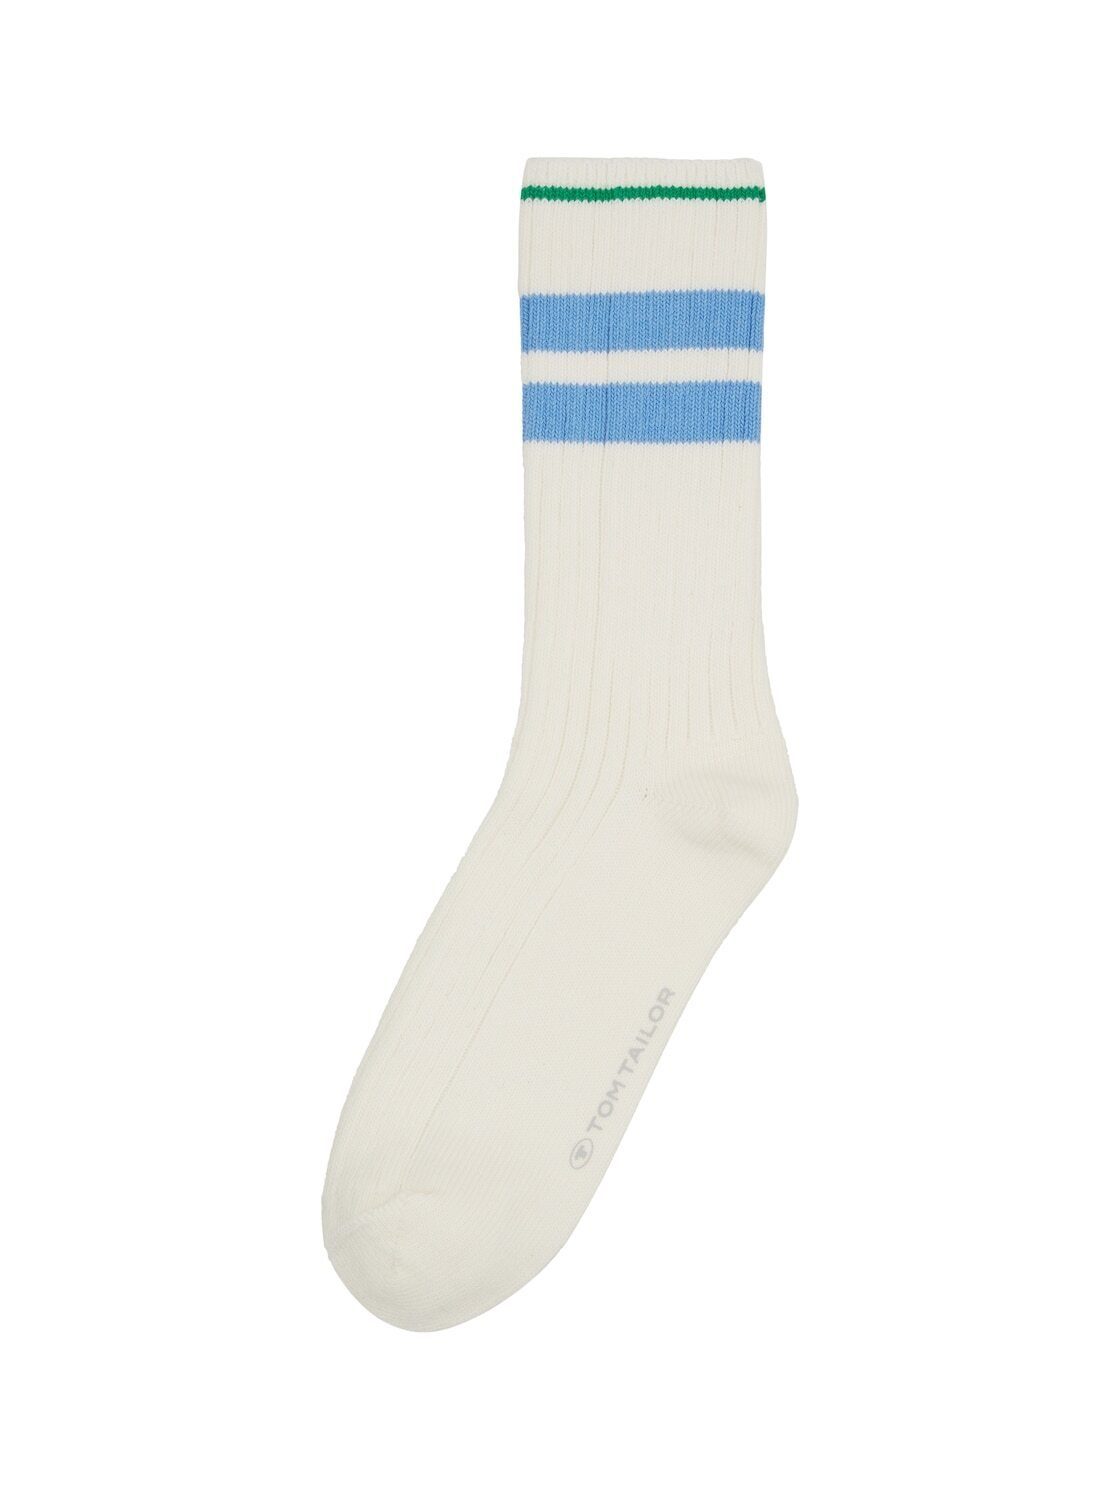 TOM TAILOR Socken Socken mit Blockstreifen | Socken